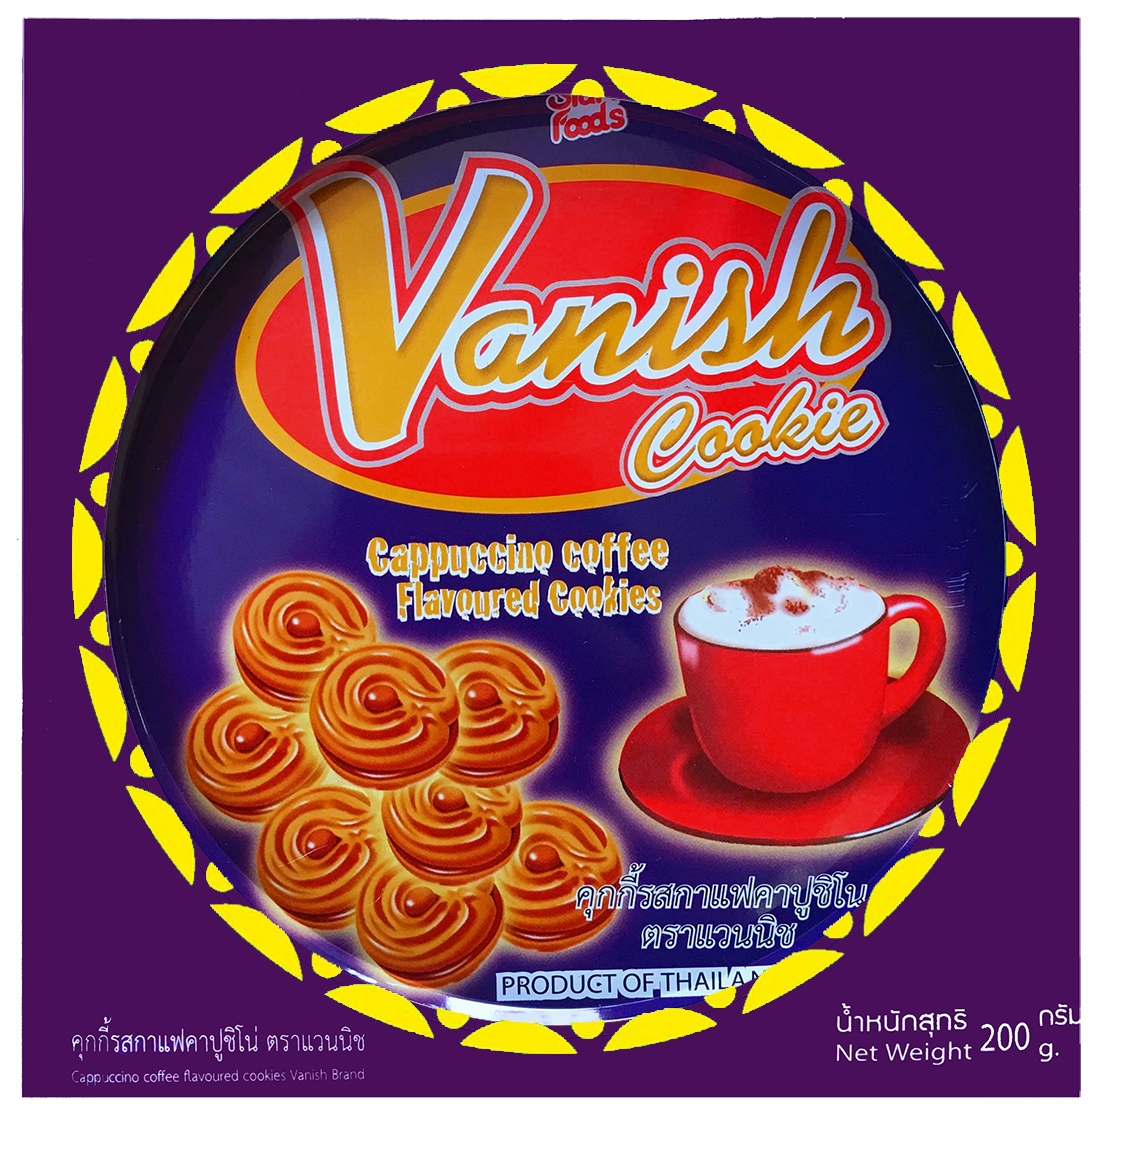 Bánh quy Vanish cà phê 200g màu tím